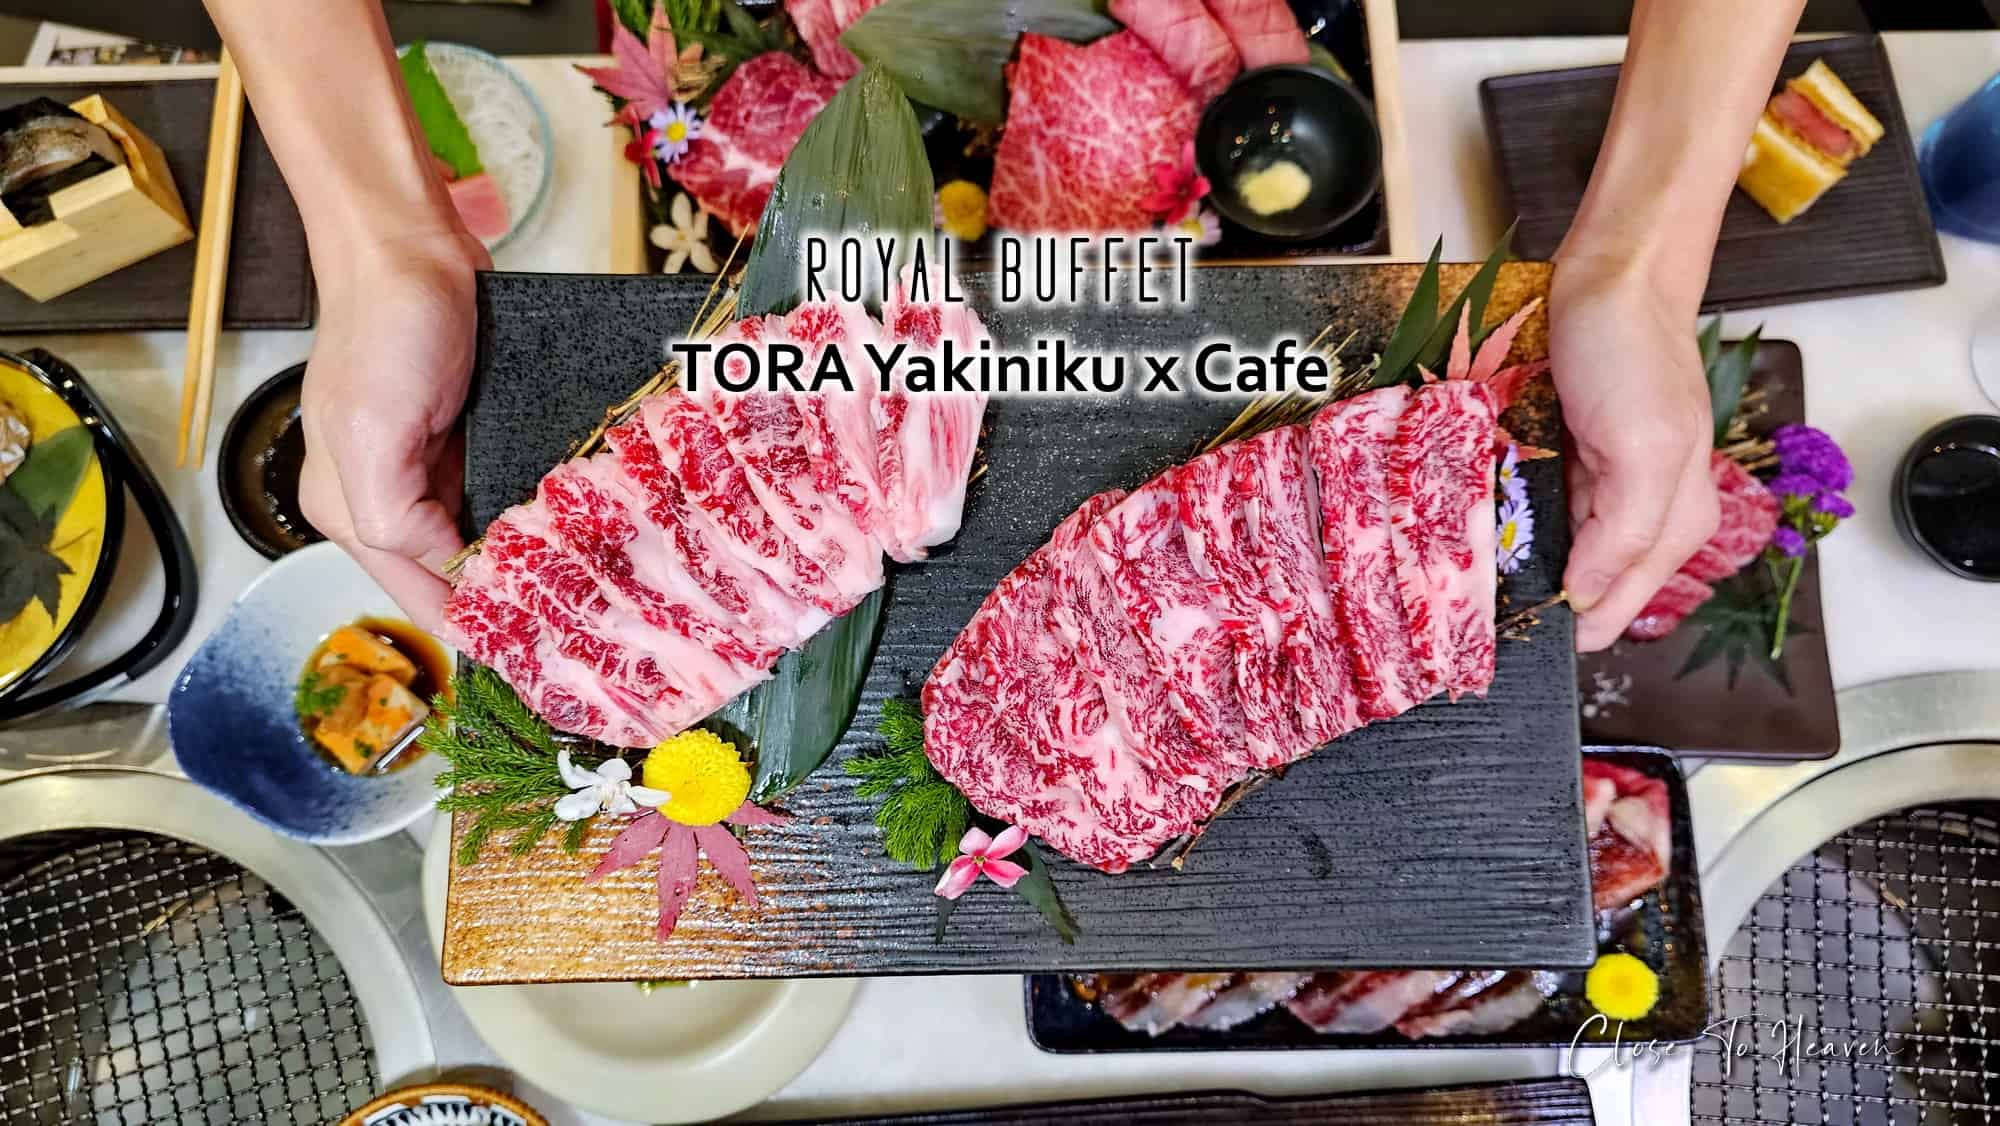 บุฟเฟ่ต์เนื้อ A5 | TORA Yakiniku x Cafe